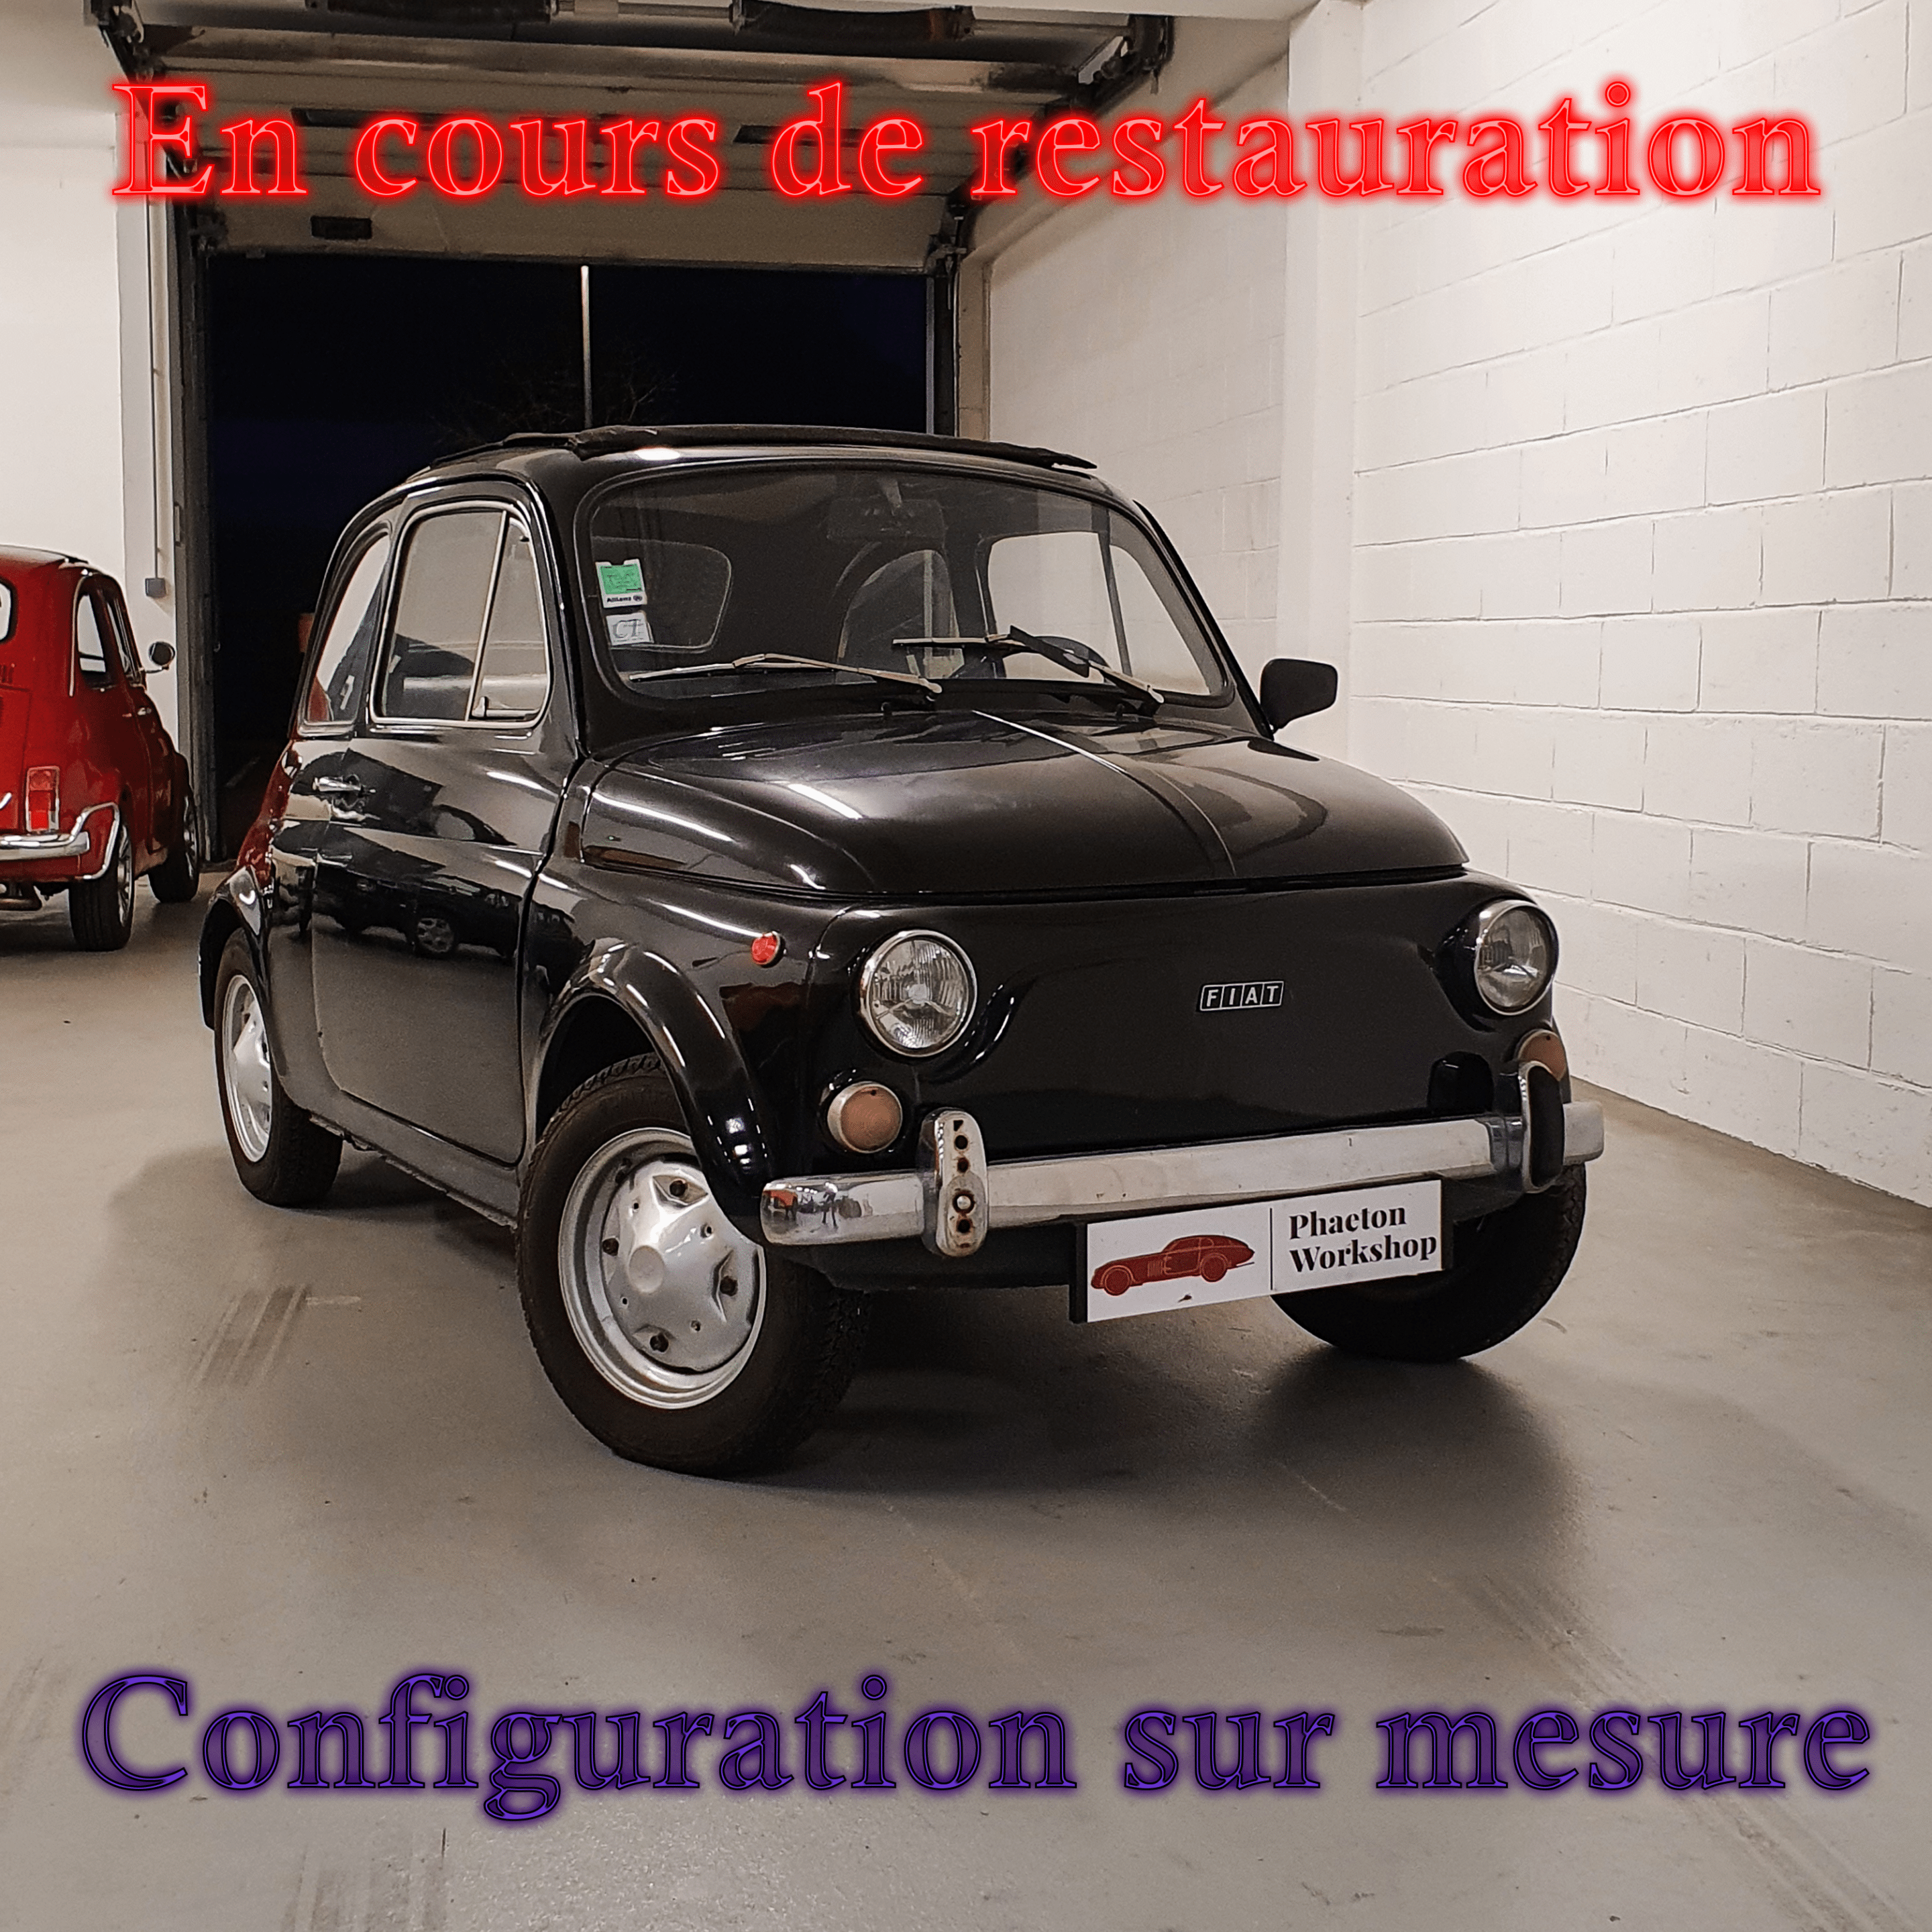 Fiat 500 R en cours de restauration